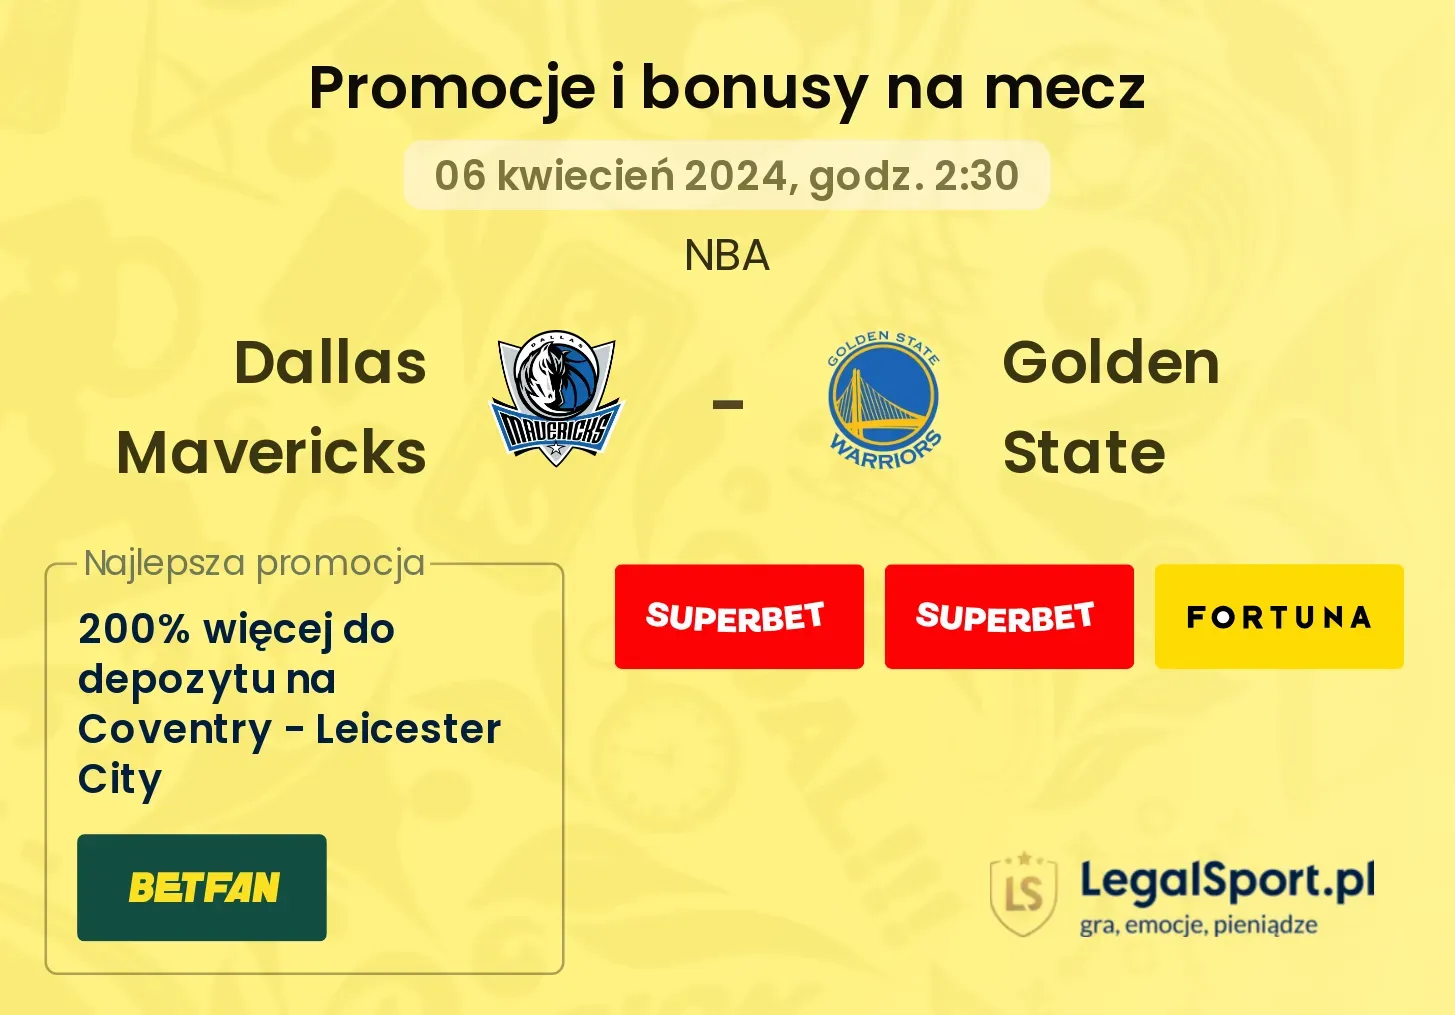 Dallas Mavericks - Golden State promocje bonusy na mecz